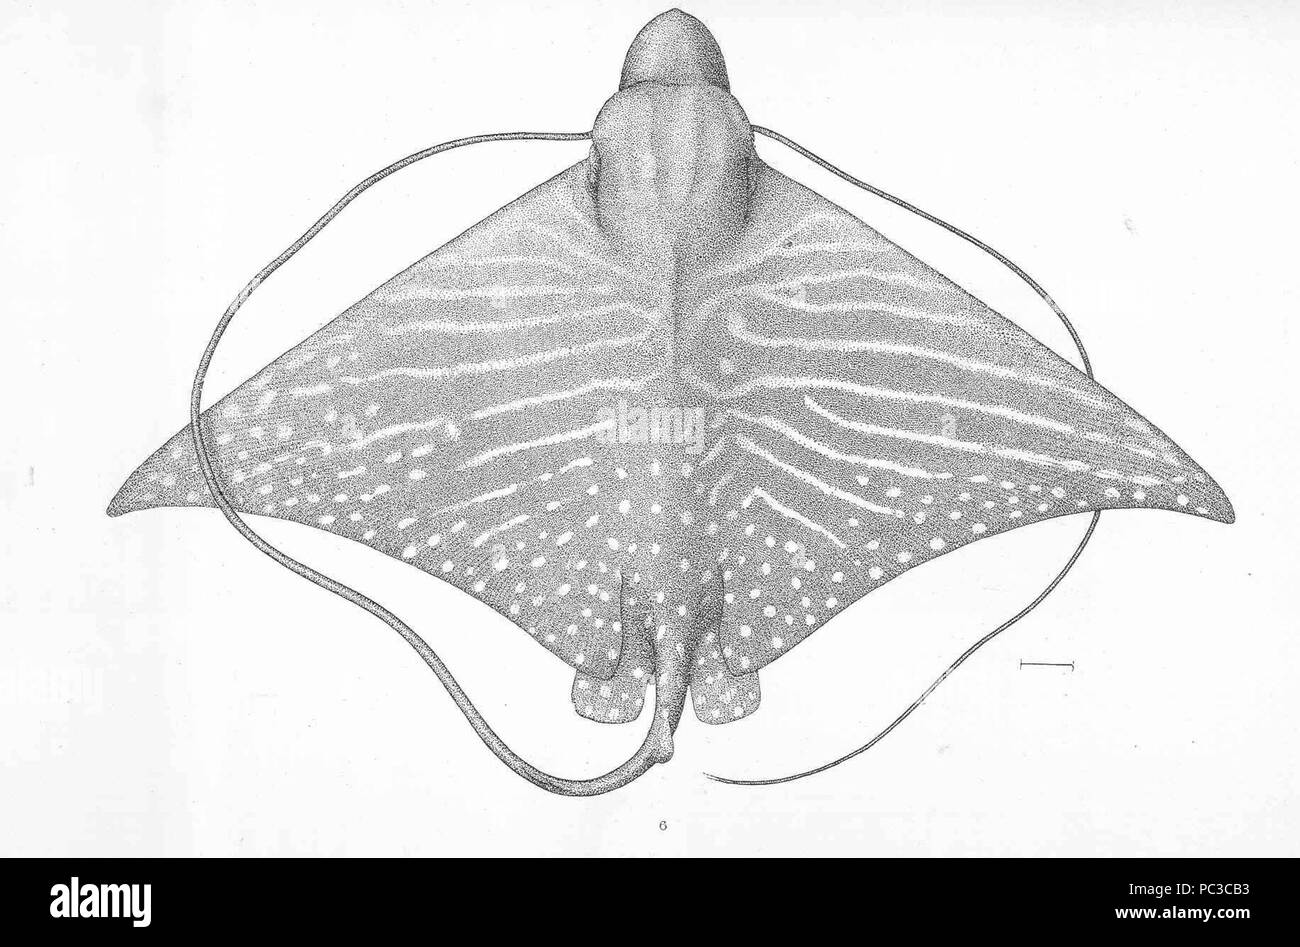 505 Pteromylaeus asperrimus Stock Photo